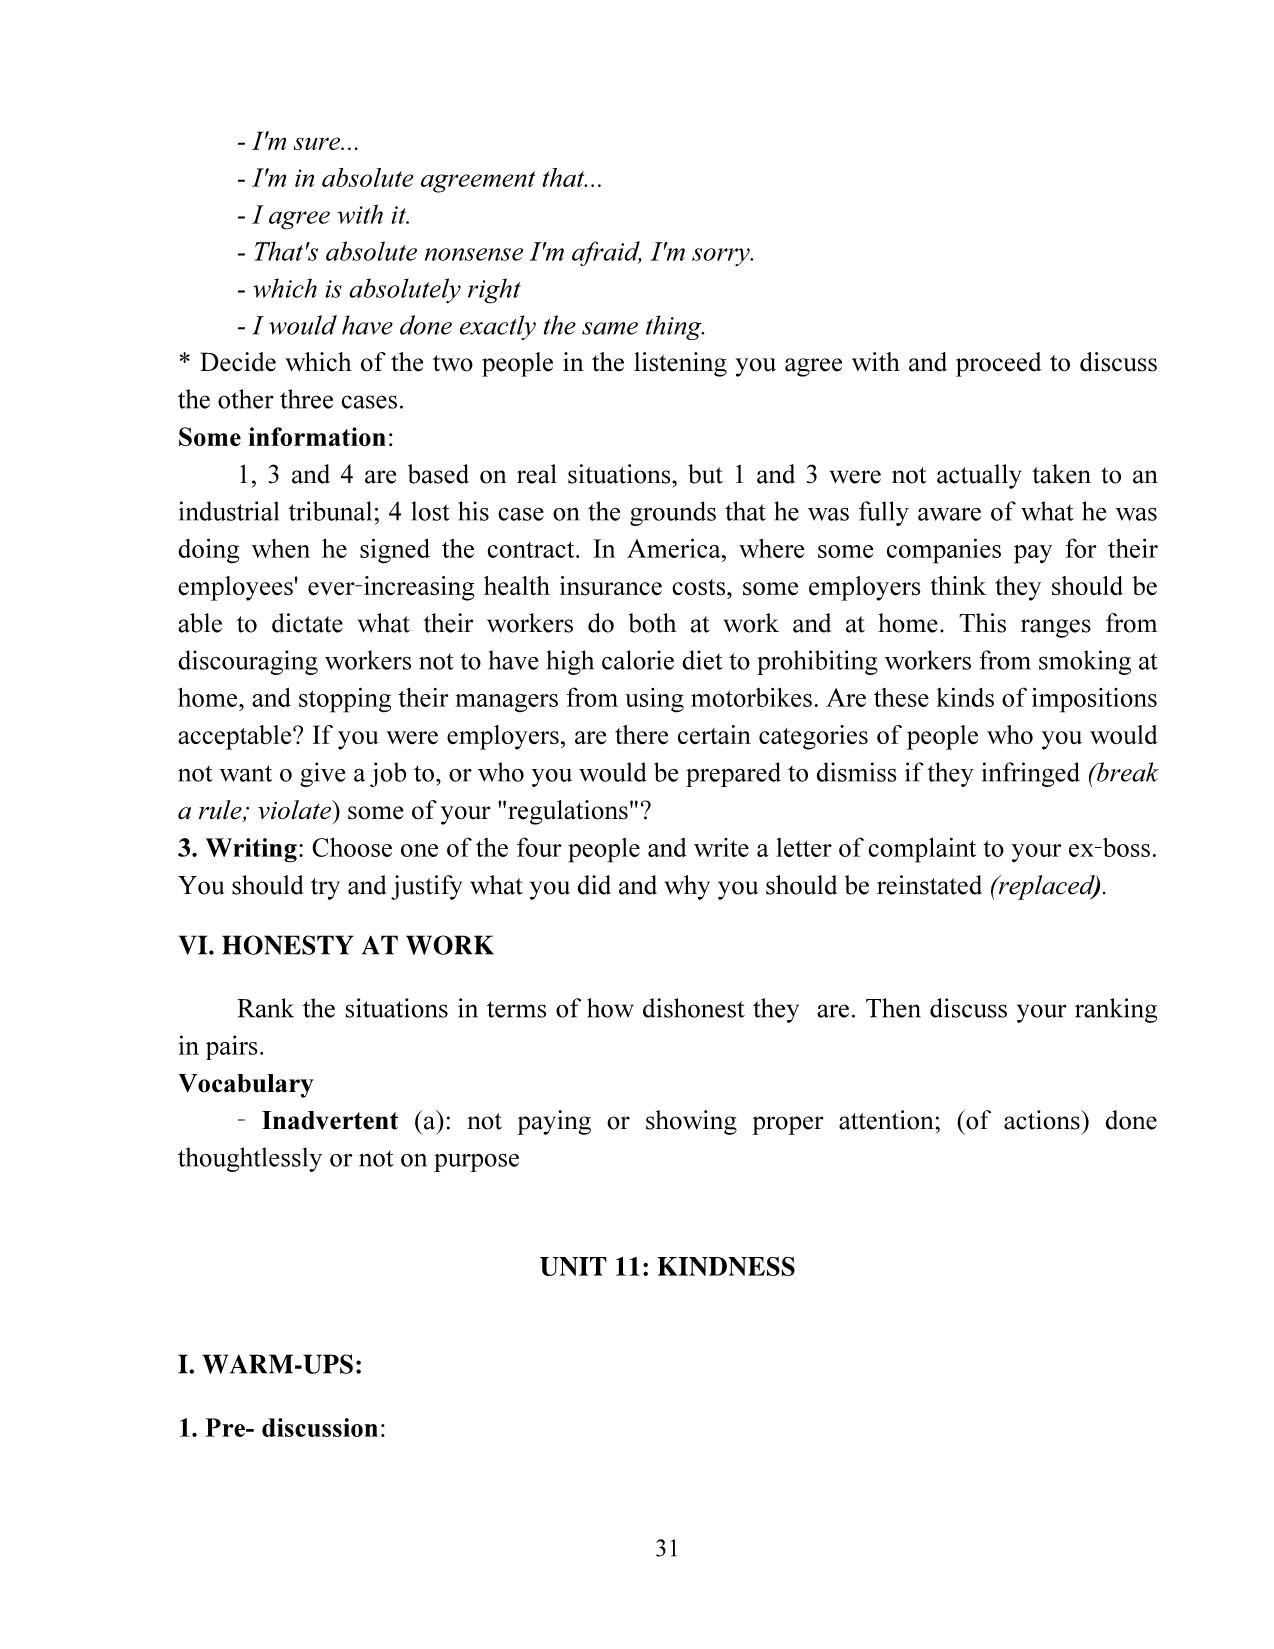 Giáo trình Speaking 3 (Phần 2) trang 4